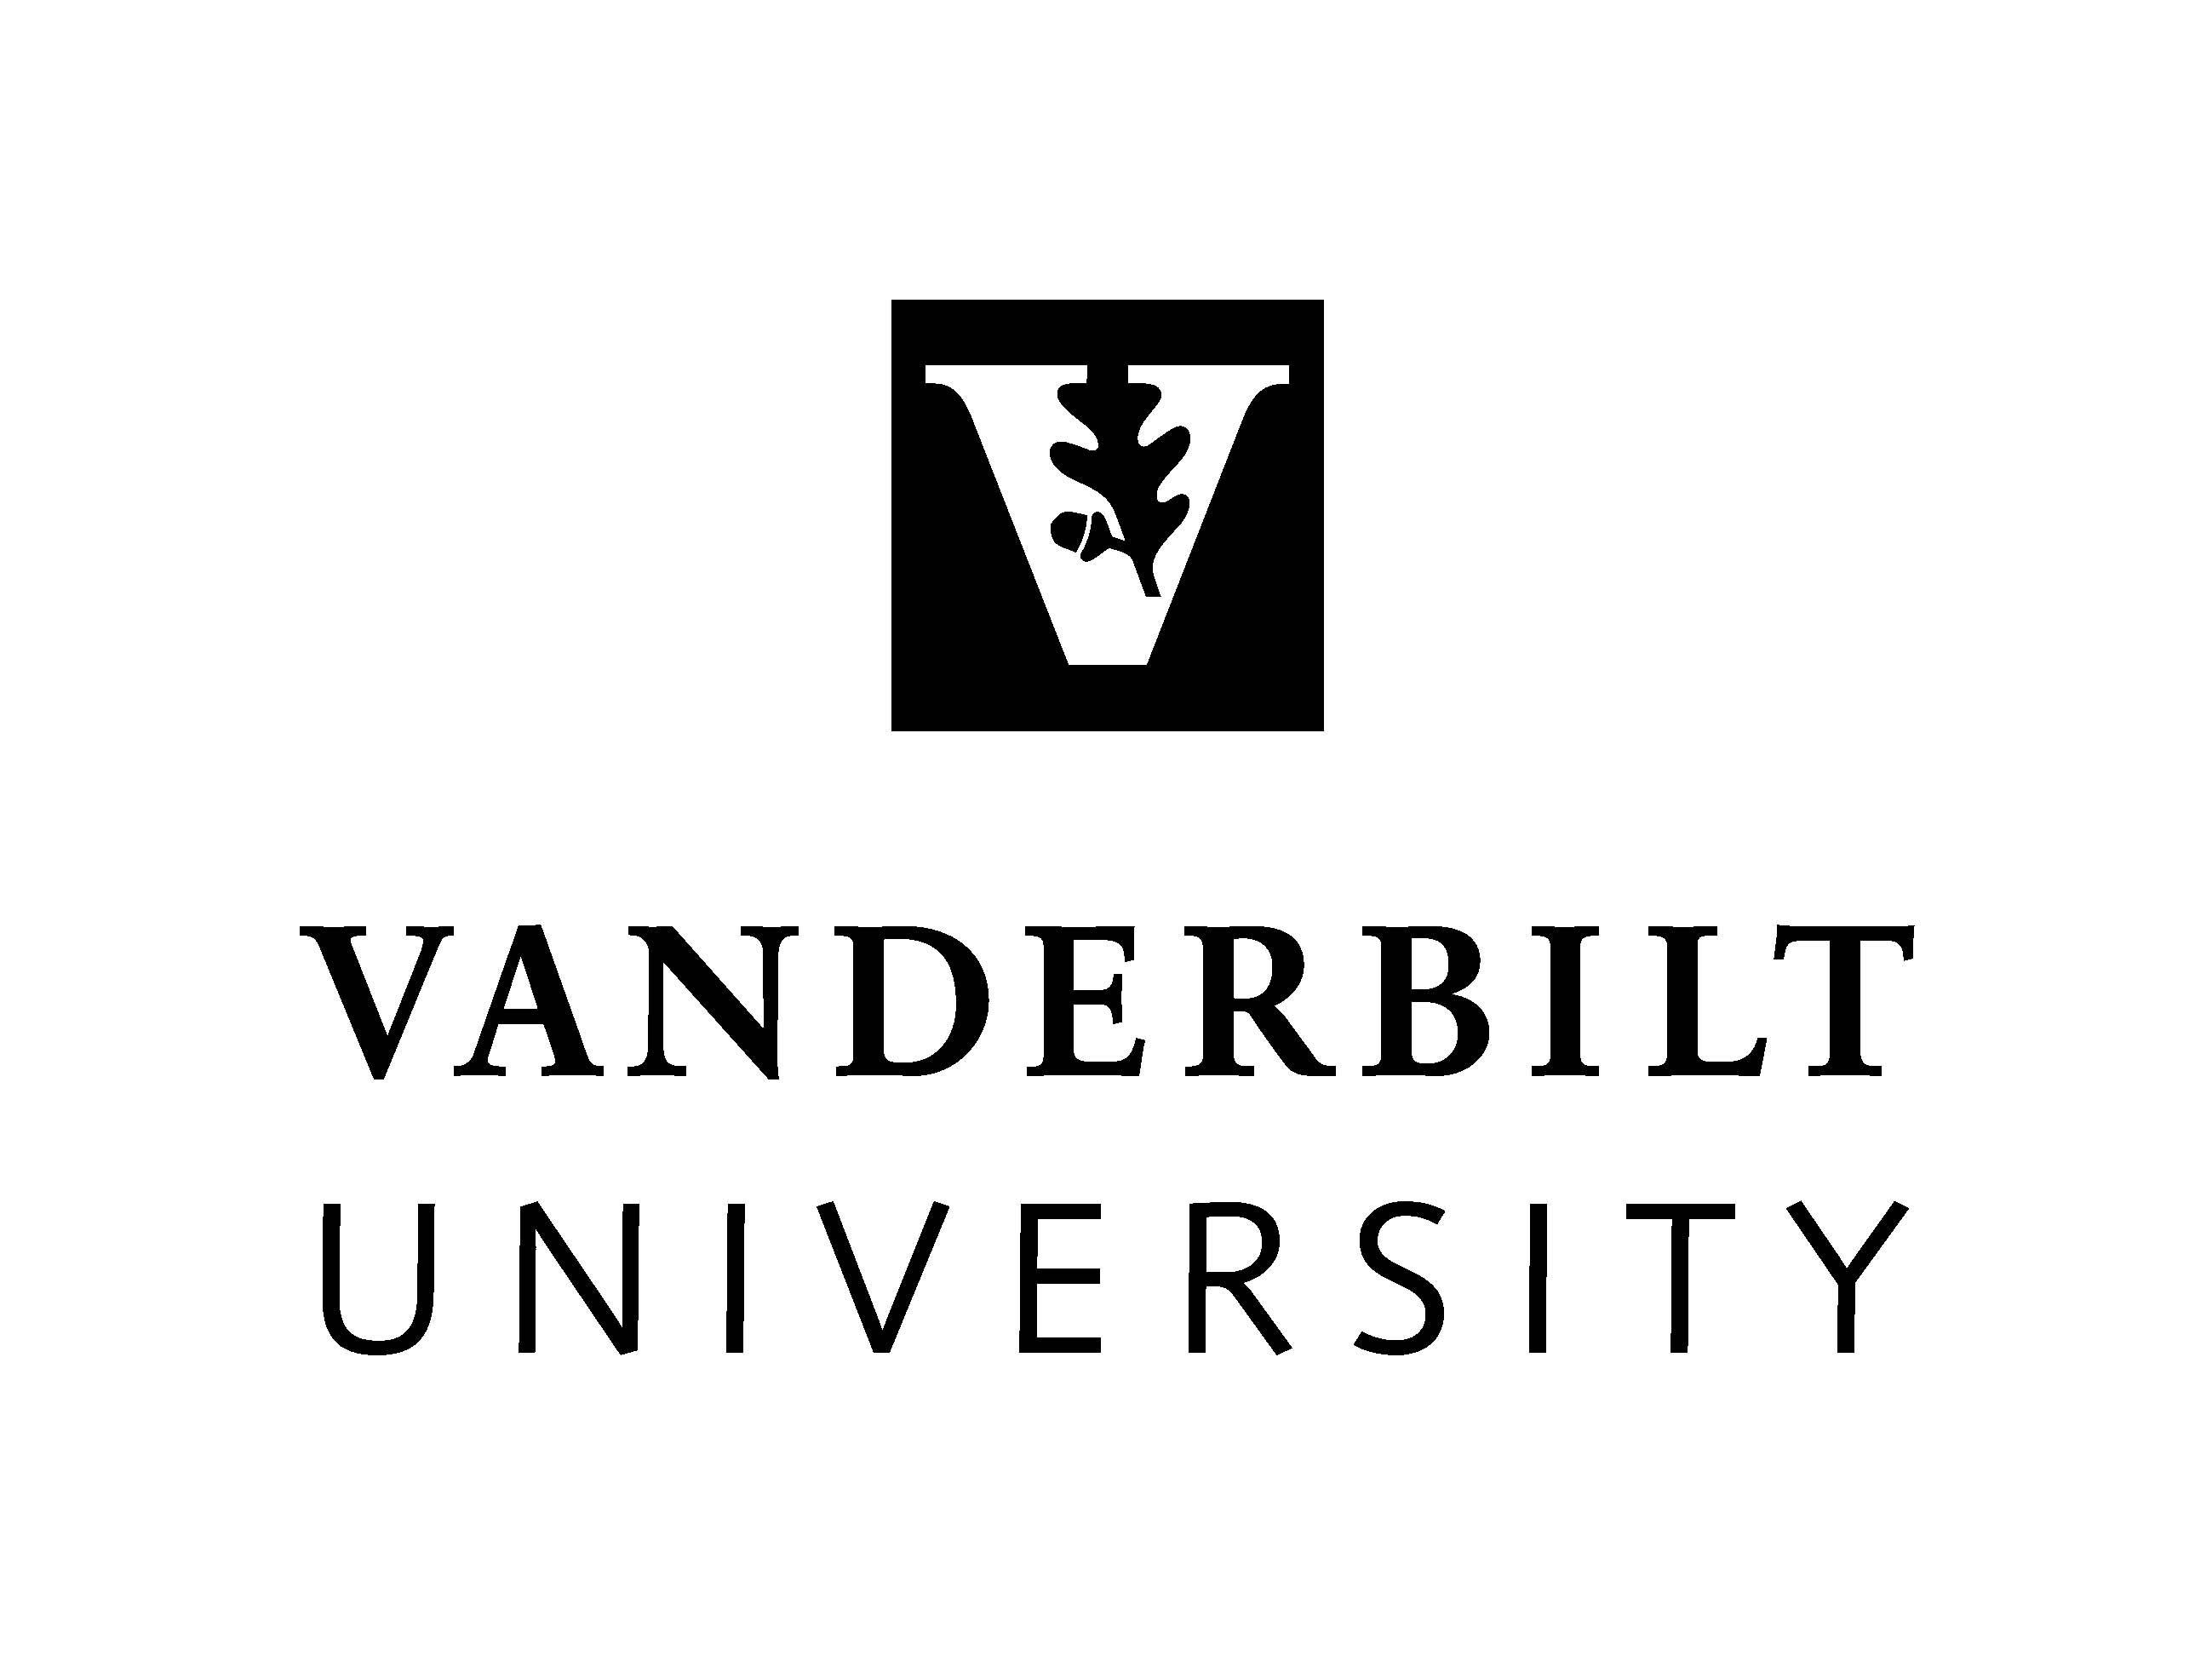 Vanderbilt University Logo - Official Vanderbilt University Logos | Vanderbilt News | Vanderbilt ...